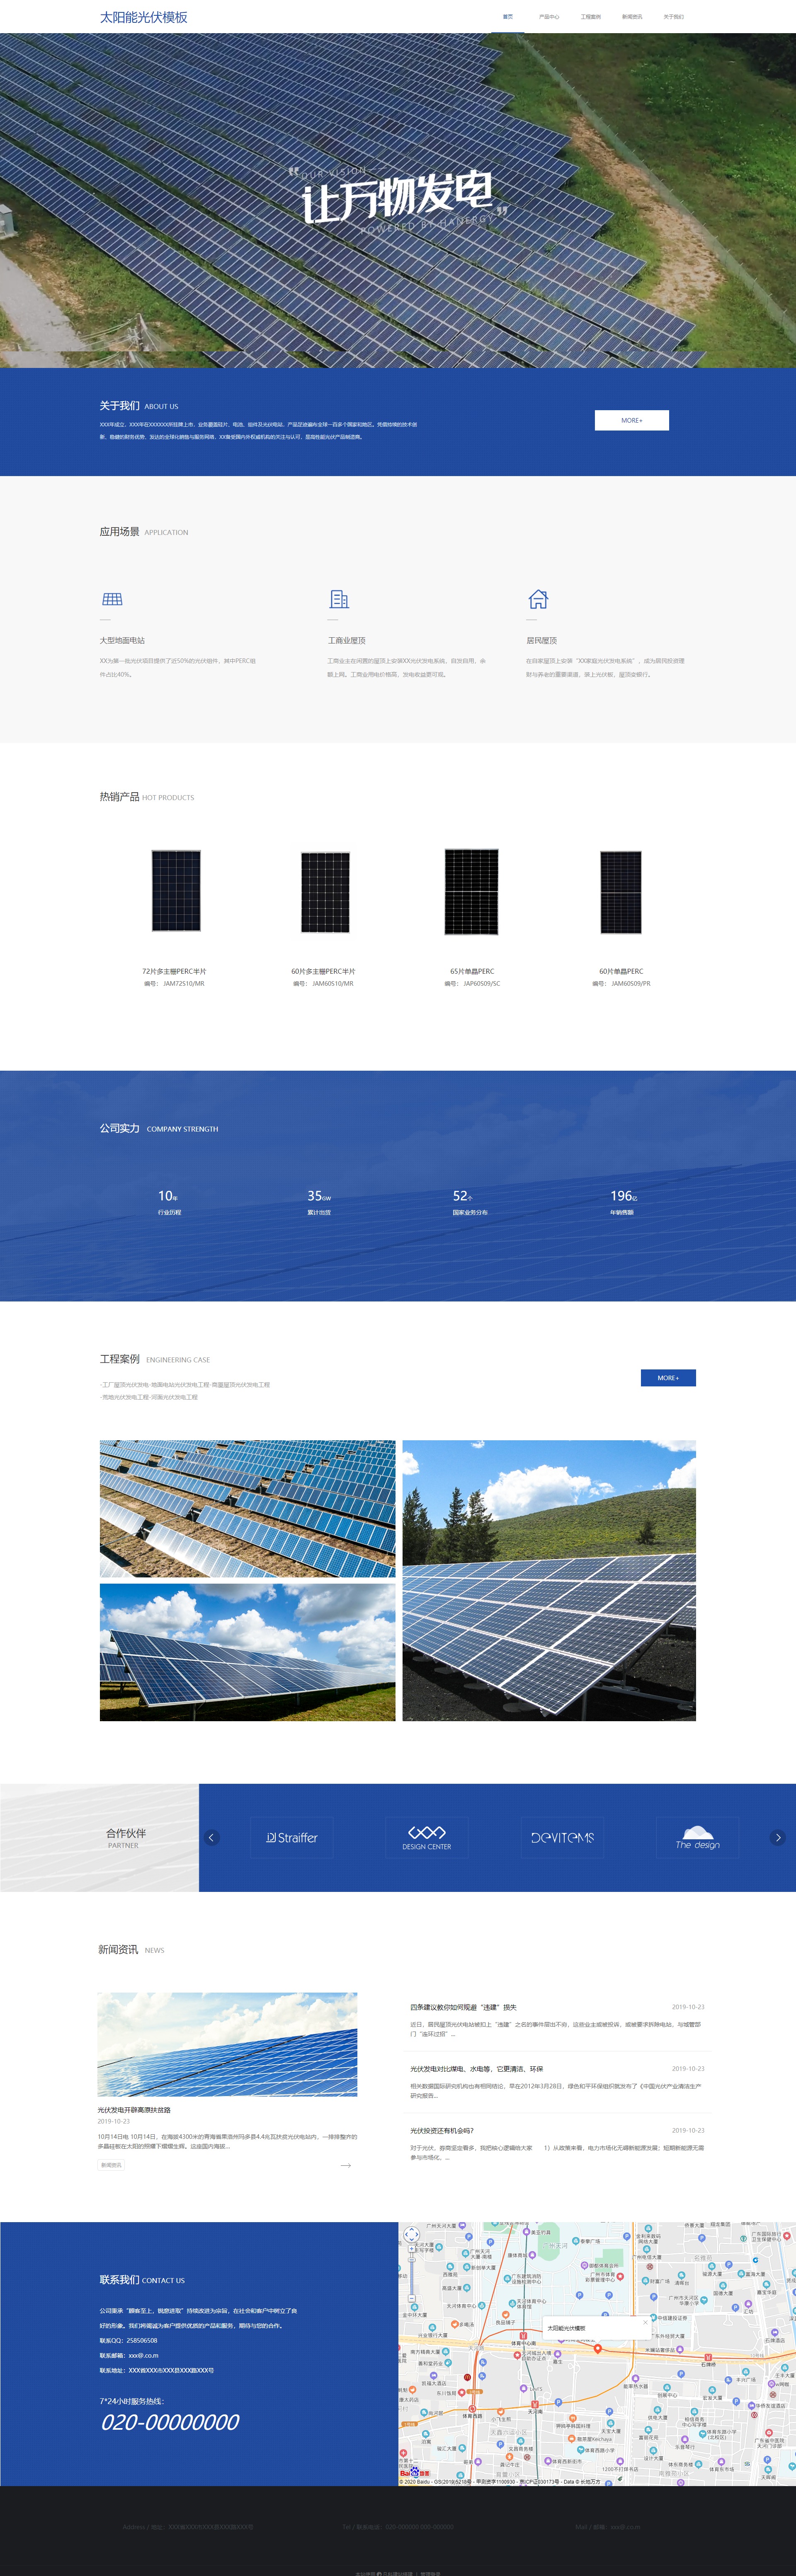 优质太阳能光伏发电自适应网站模板